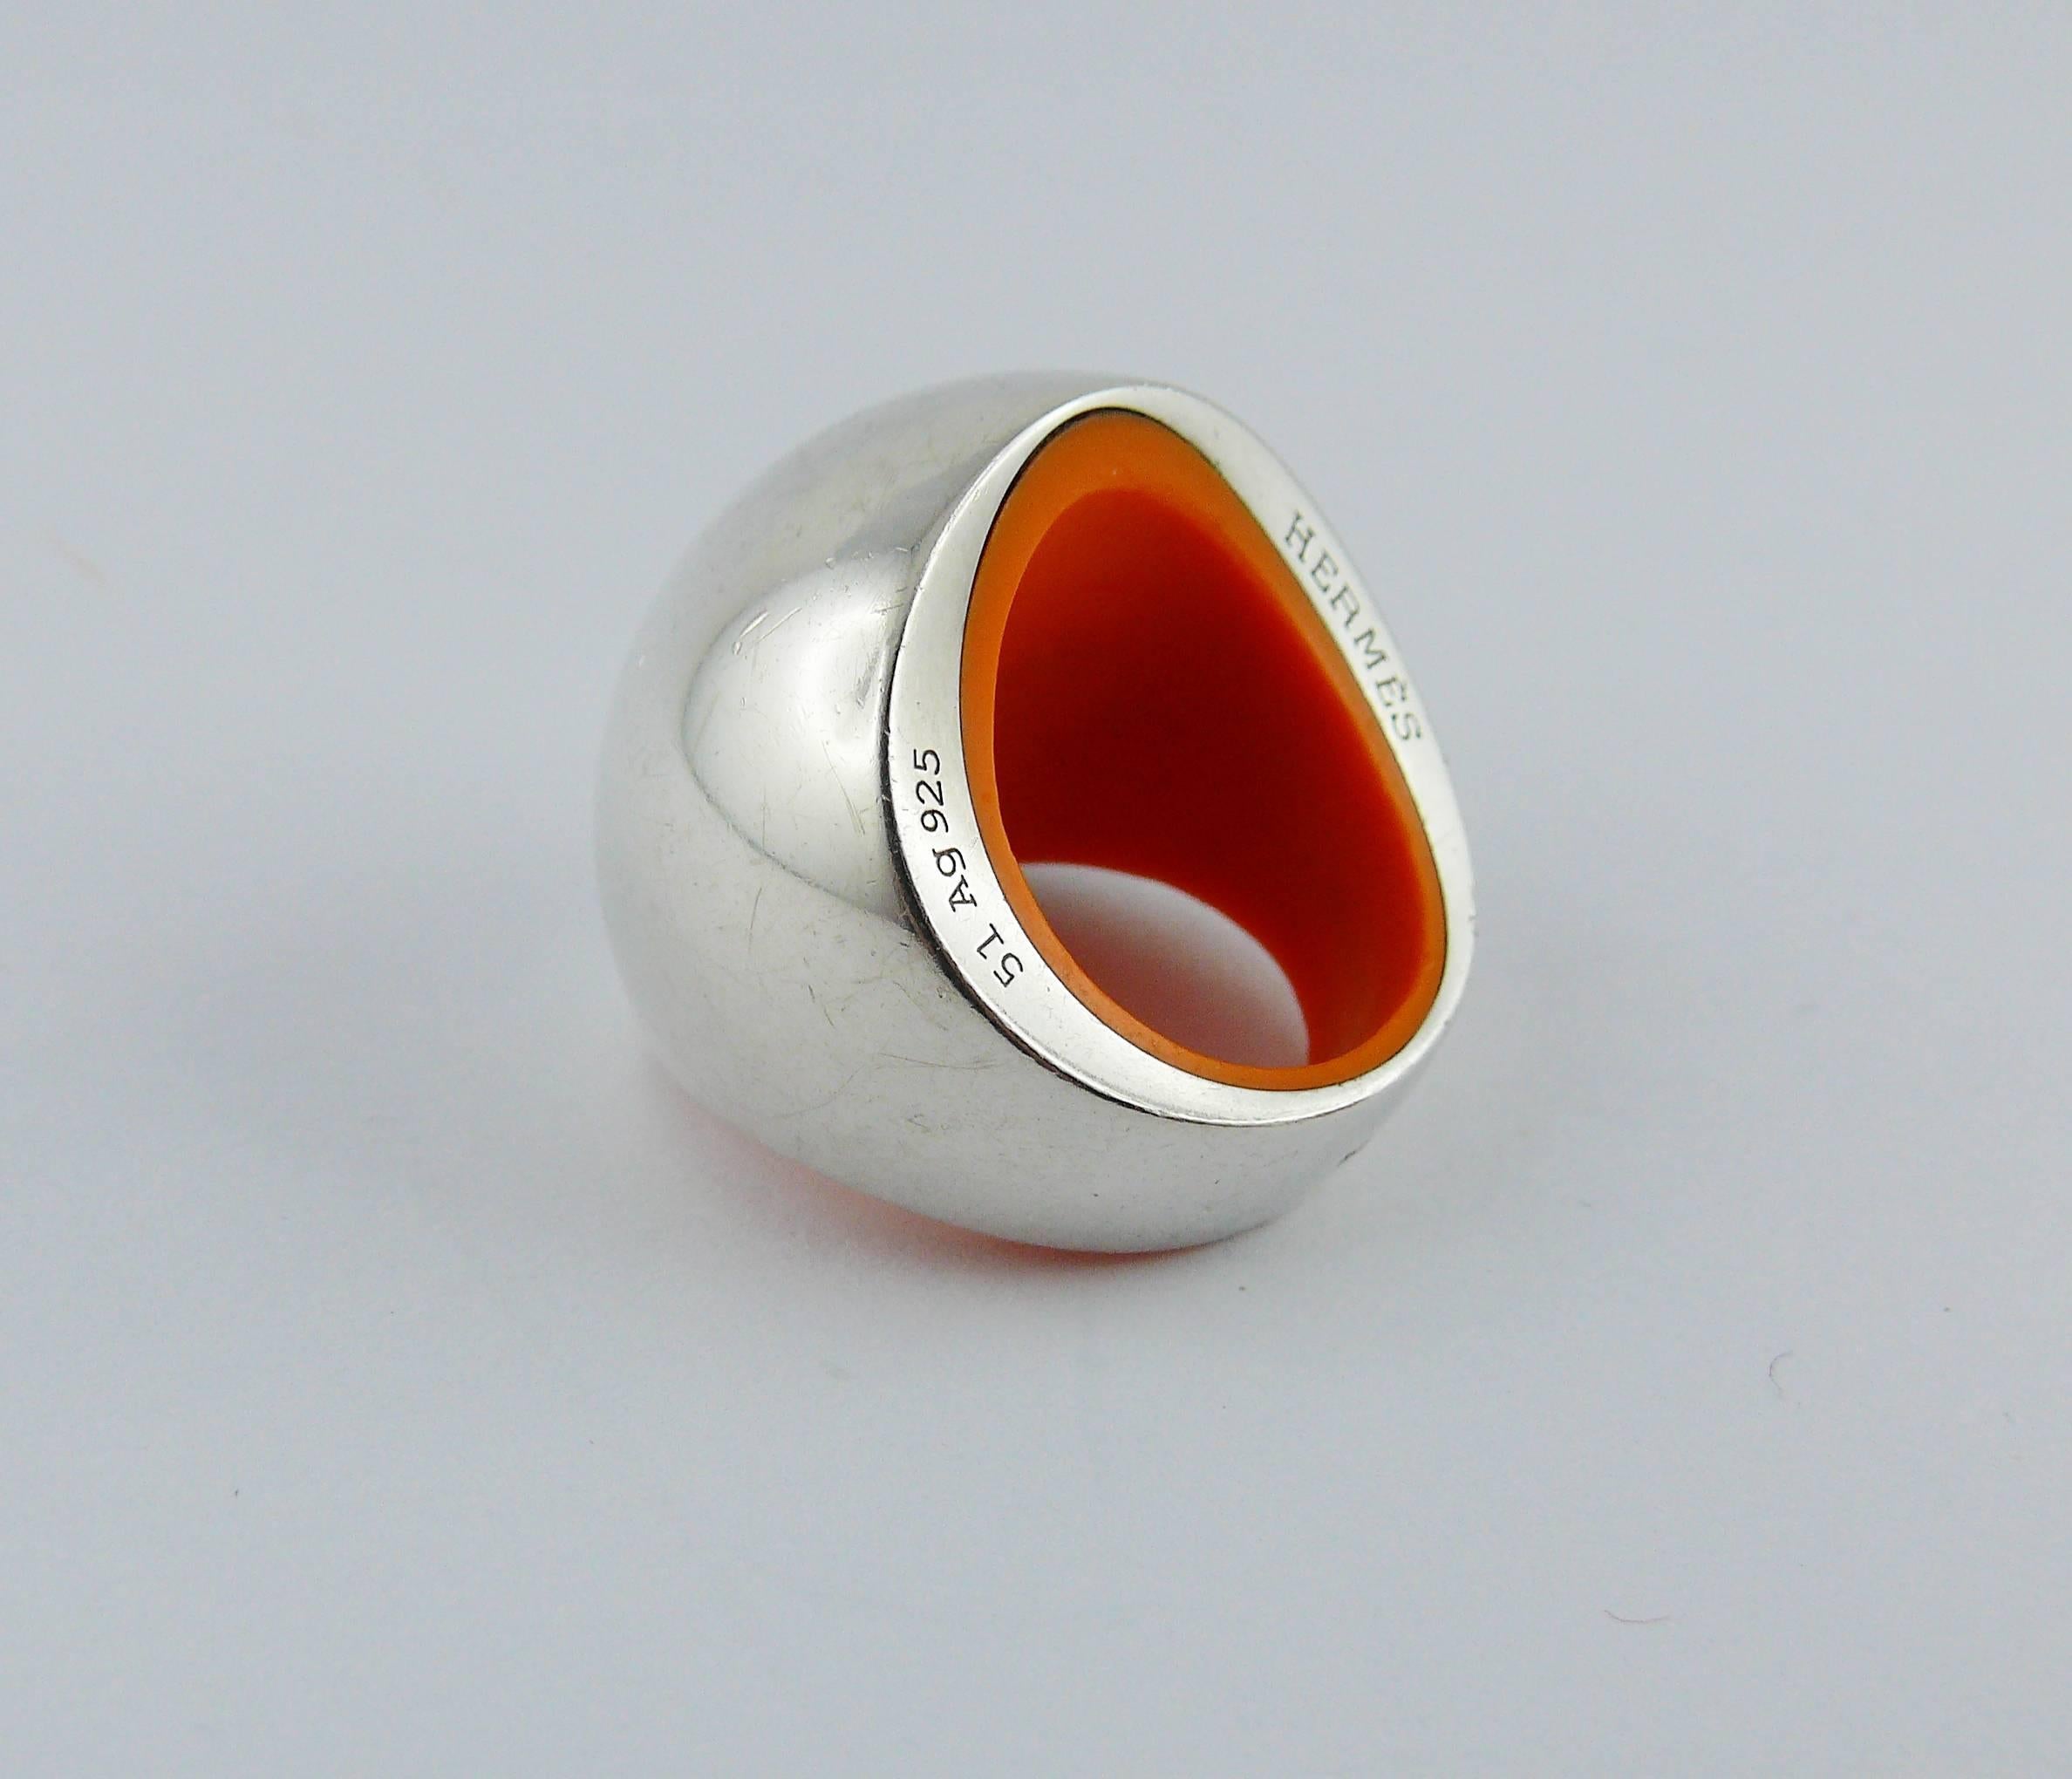 HERMES Ring Quark aus Sterlingsilber mit Kuppelmotiv und orangefarbenem Harzeinsatz.

Prägung HERMES 51 Ag925.
Geprägtes A.D.

Ungefähre Maße: Umfang ca. 5,09 cm (2 Zoll).

Kommt mit Originalverpackung.

ANMERKUNGEN
- Es handelt sich um einen